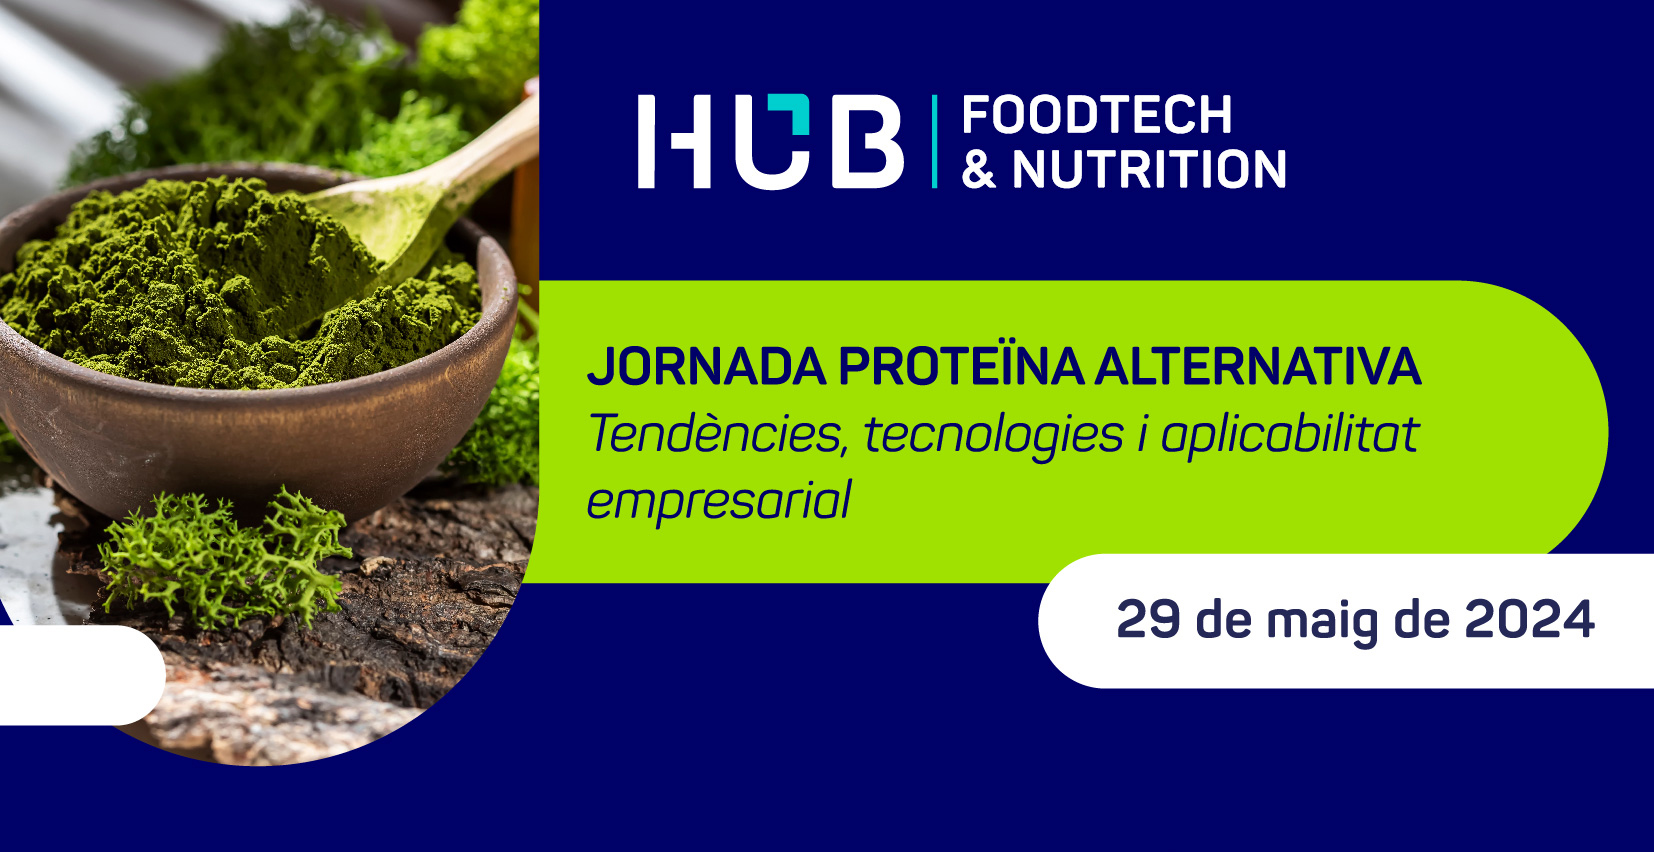 El Hub Foodtech & Nutrition organitza una jornada sobre tendències i oportunitats en proteïna alternativa